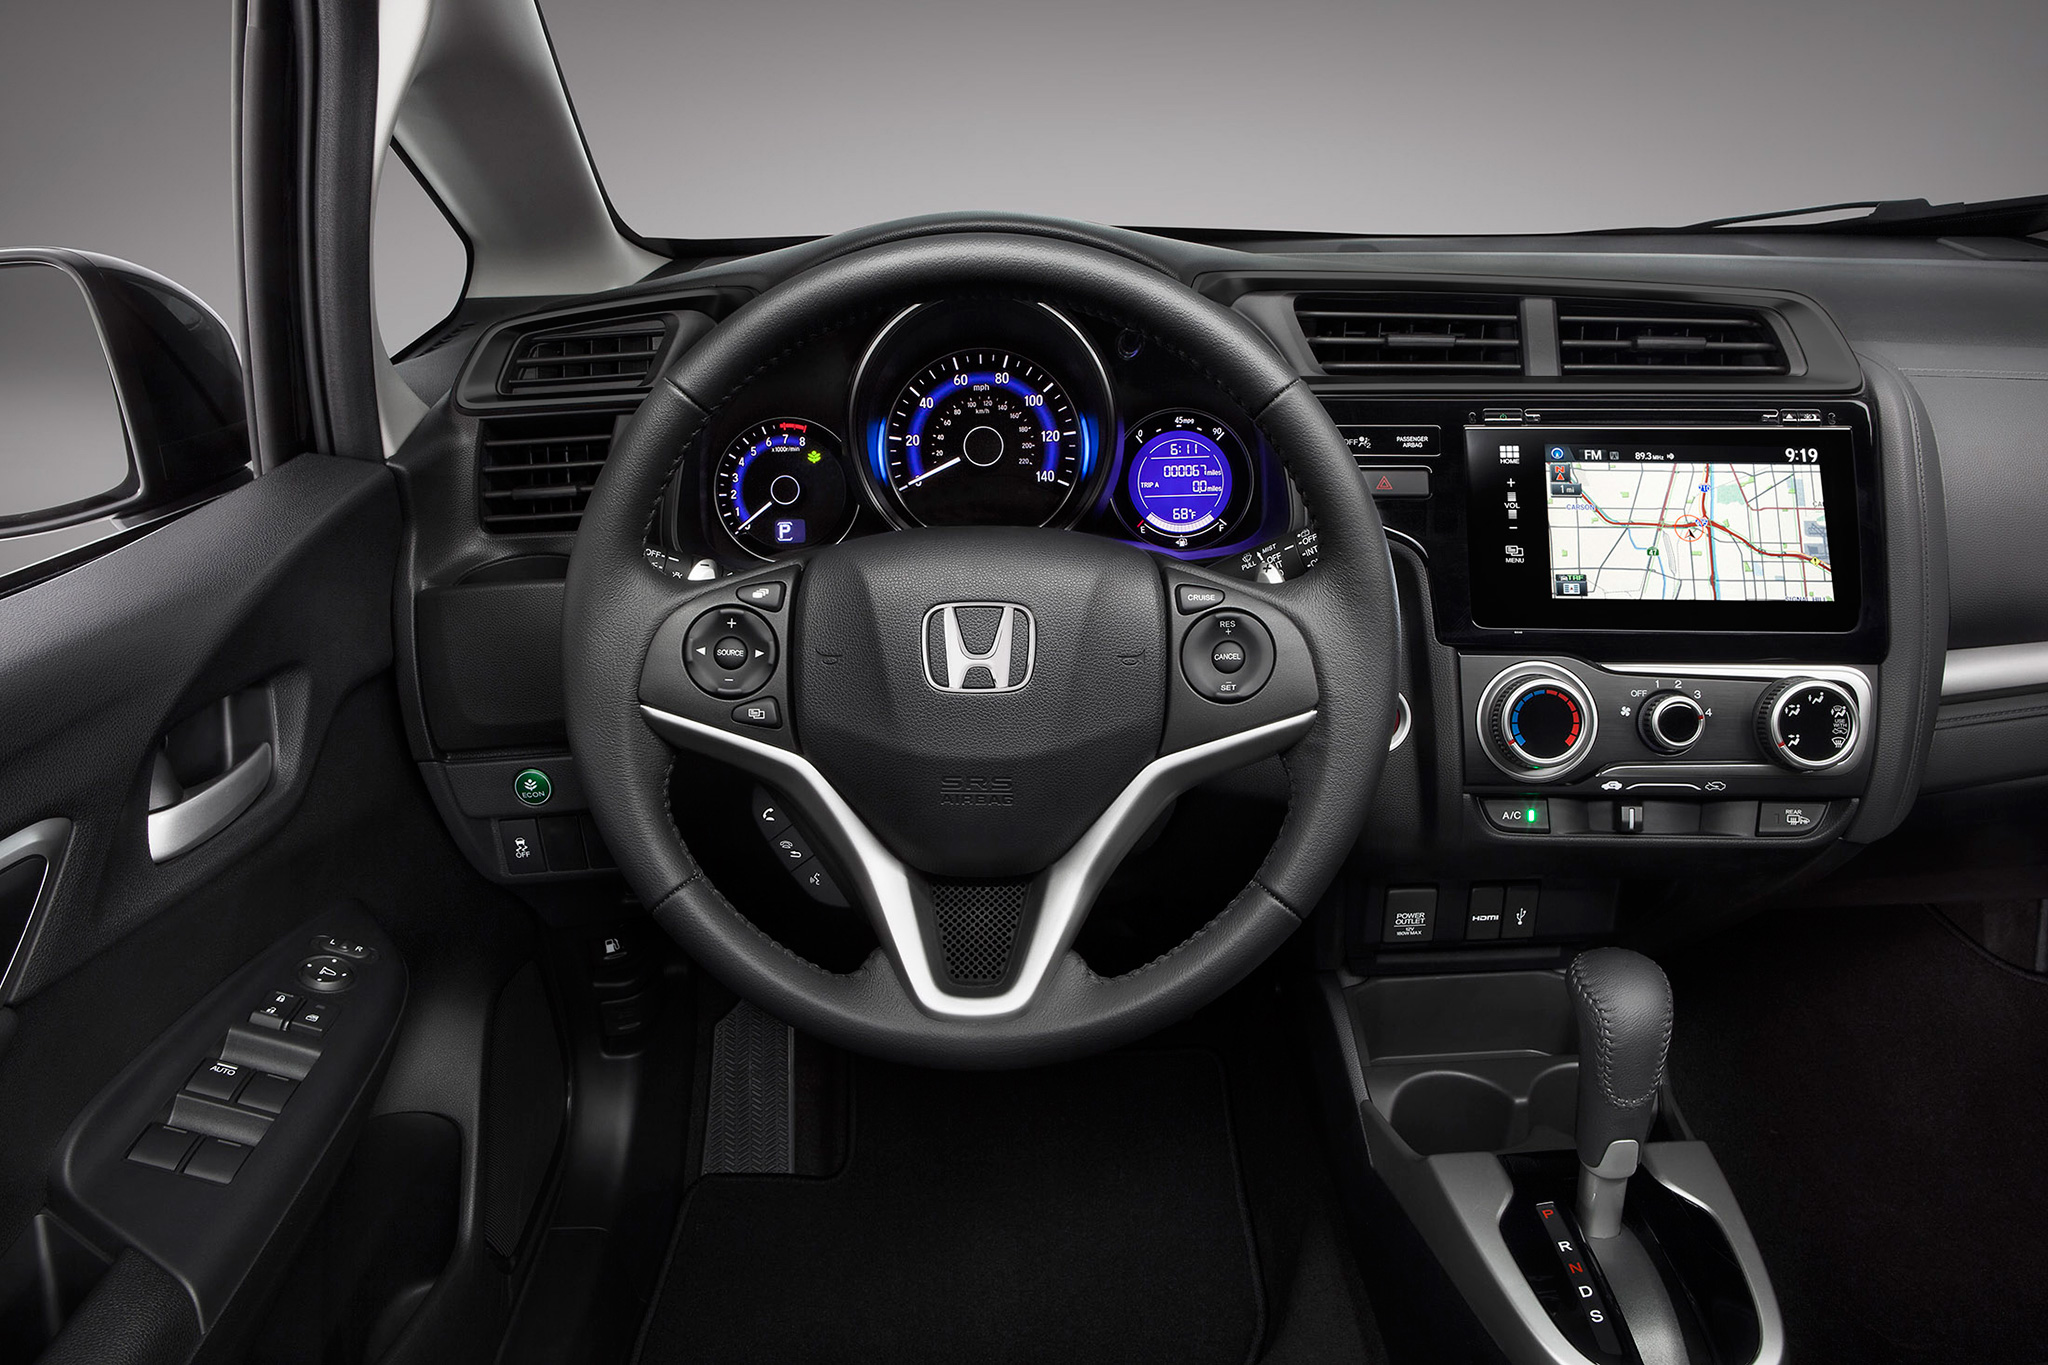 2017 Honda Fit cabin